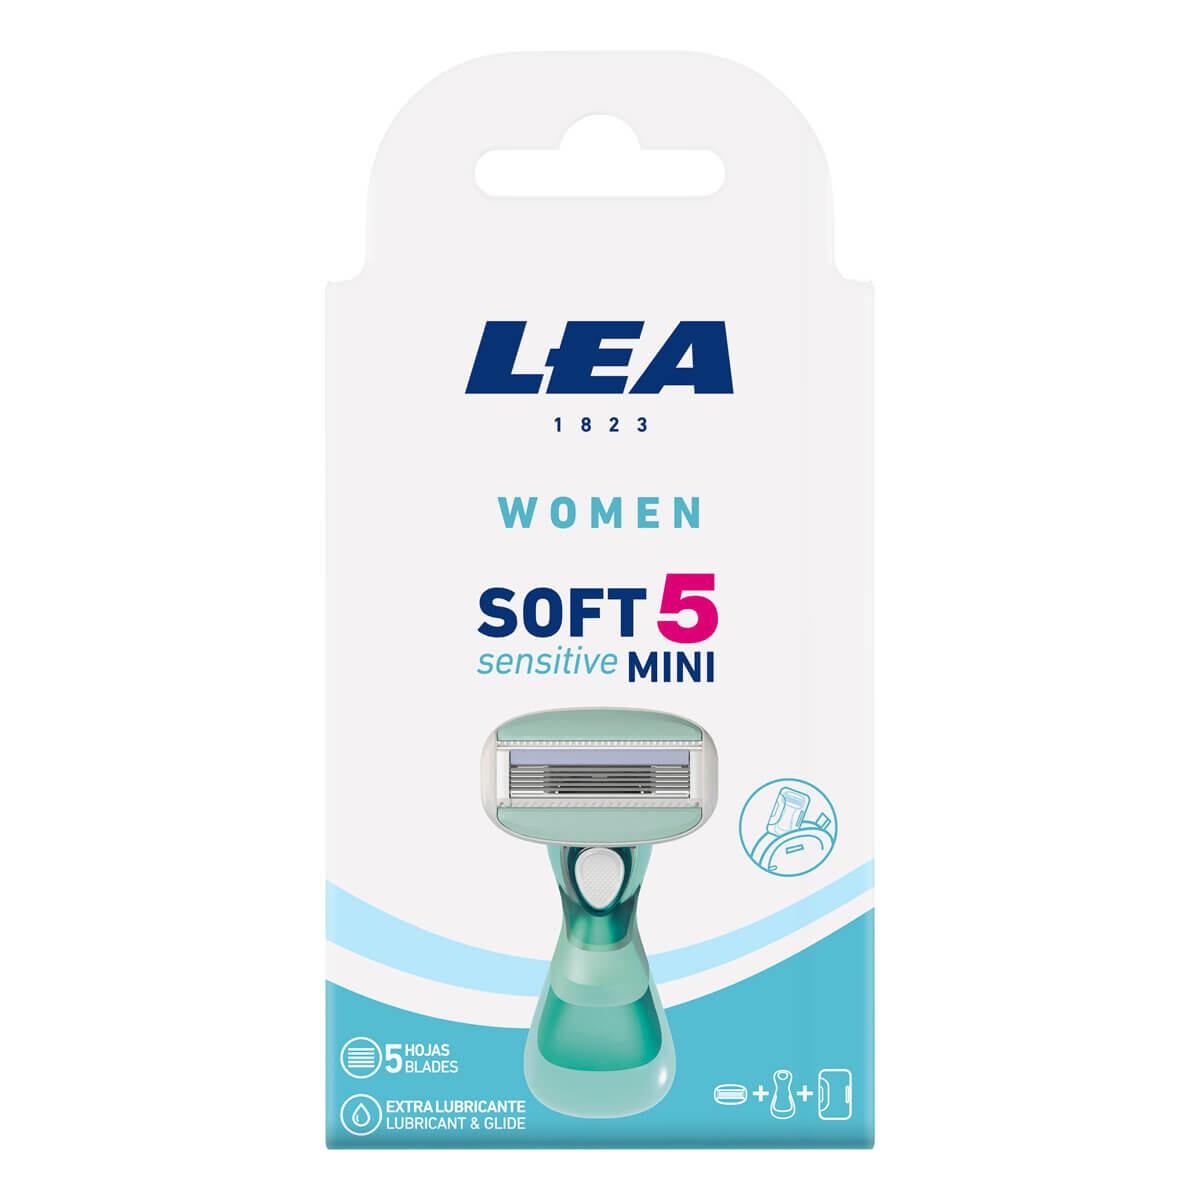 Billede af LEA Soft 5 Sensitive Mini, Skraber og 1 blad (5 klinger), Women